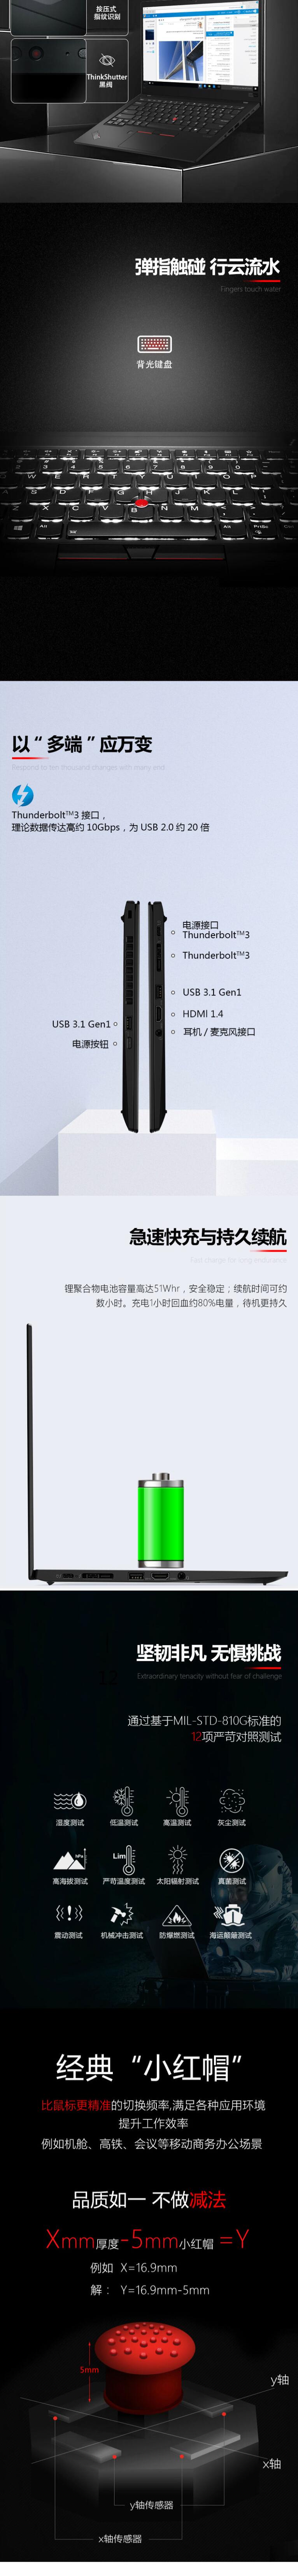 联想ThinkPad X1 Carbon 2019 14英寸笔记本电脑（i7-10710U/16G/512G SSD/核显/指纹识别）带半年4G流量(9)